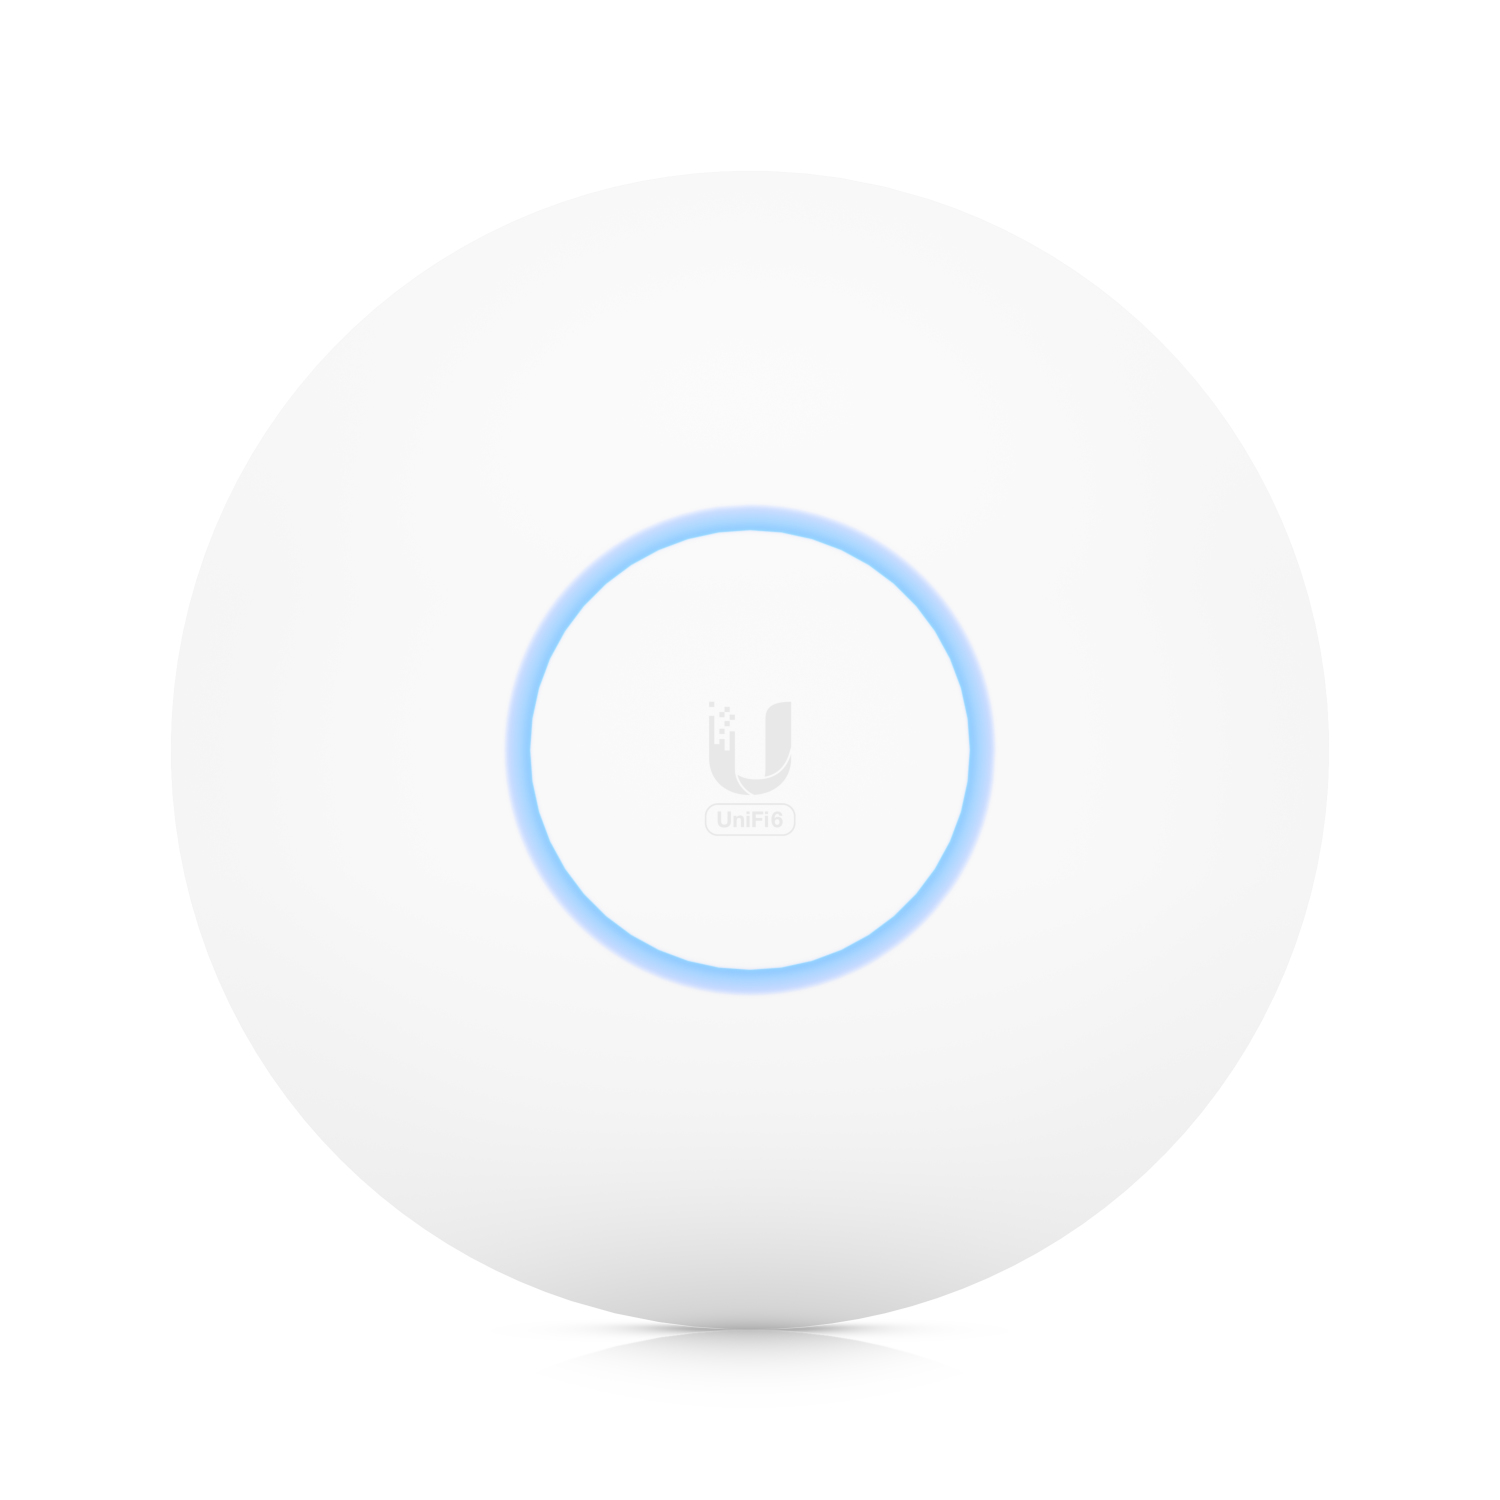 UbiQuiti UniFi U6-PRO - Accesspoint - Wi-Fi 6